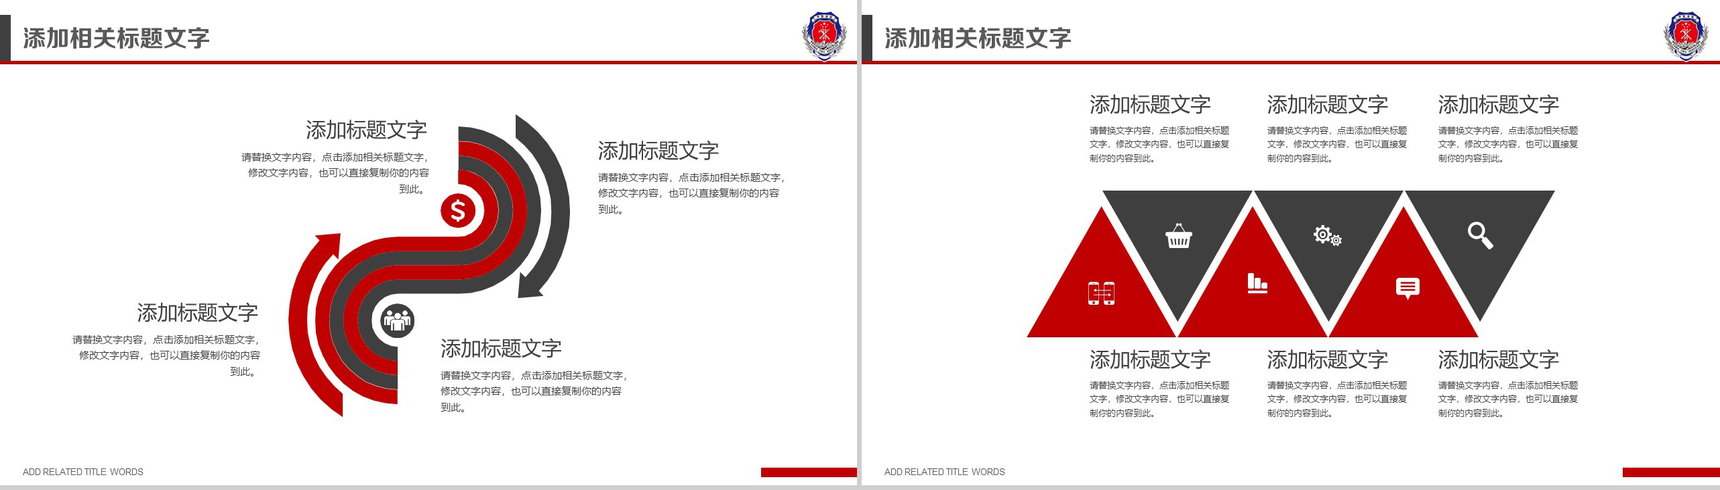 中国消防 防火安全PPT模板-7